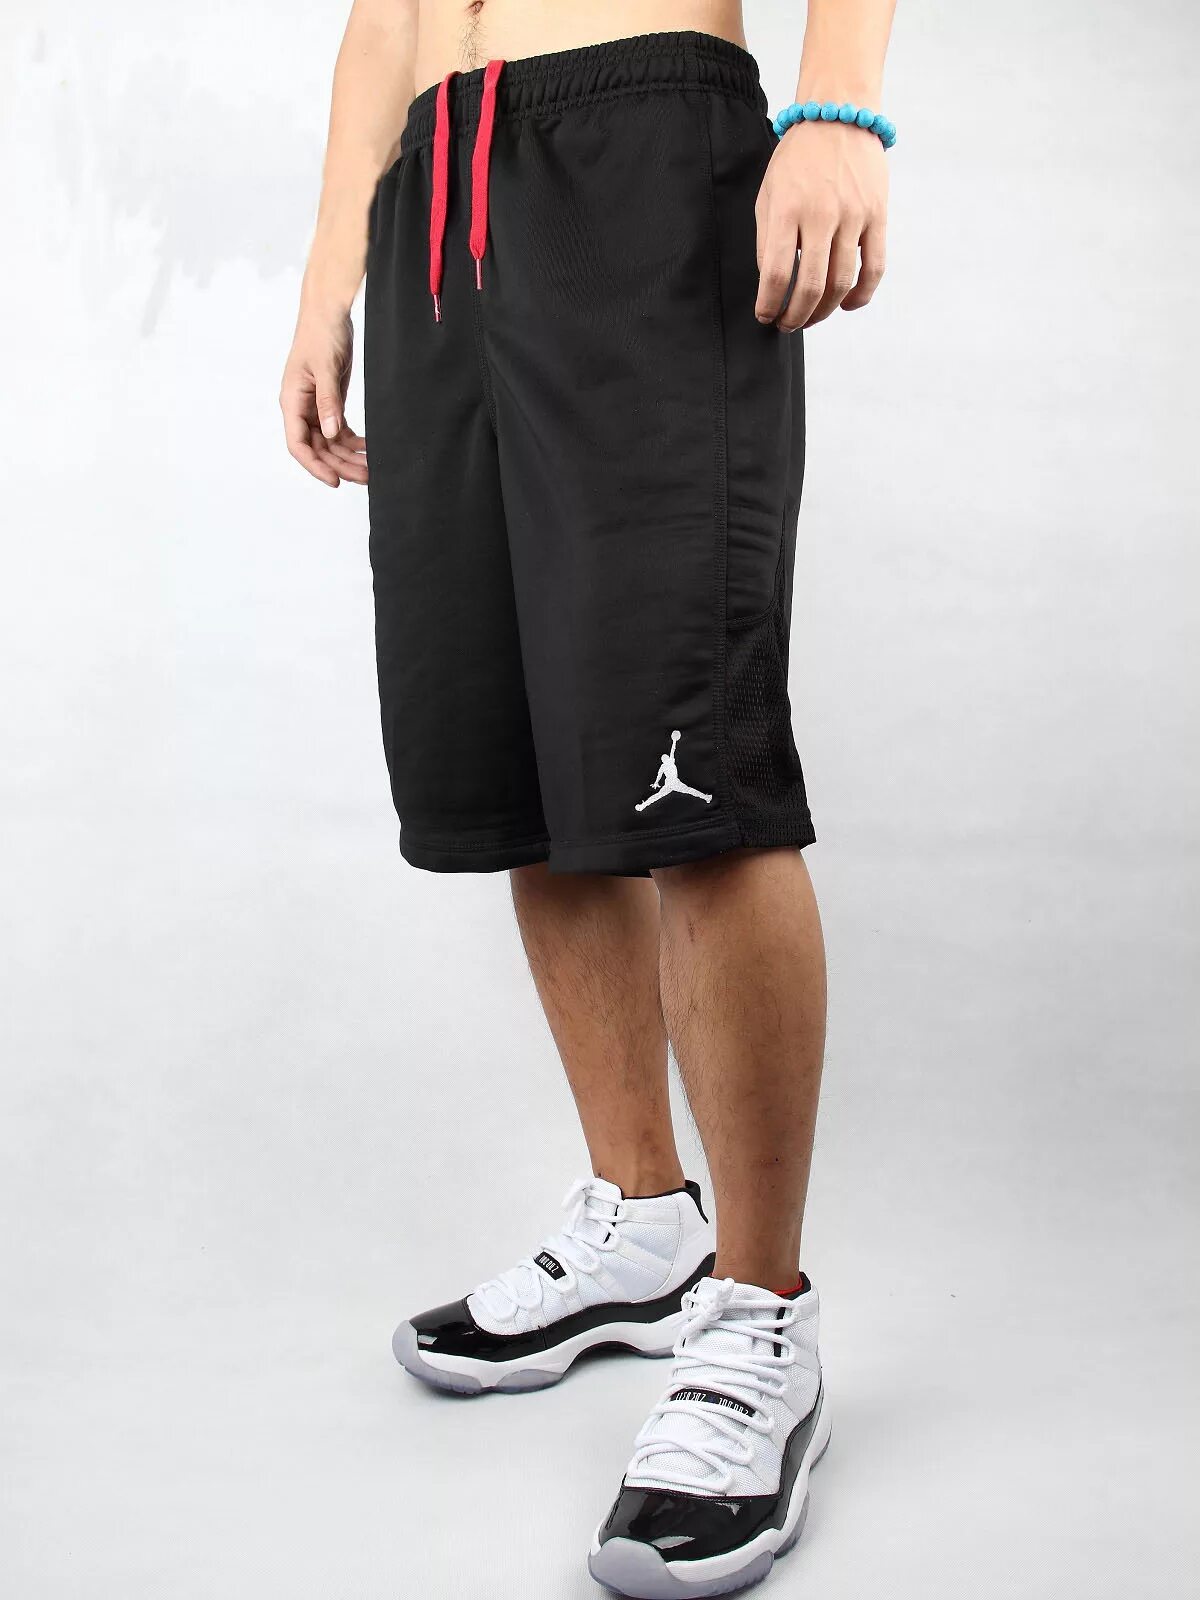 Шорты мужские удлиненные. Шорты Nike Jordan Basketball. Шорты найк баскетбольные мужские. Шорты мужские найк fa191204nic.